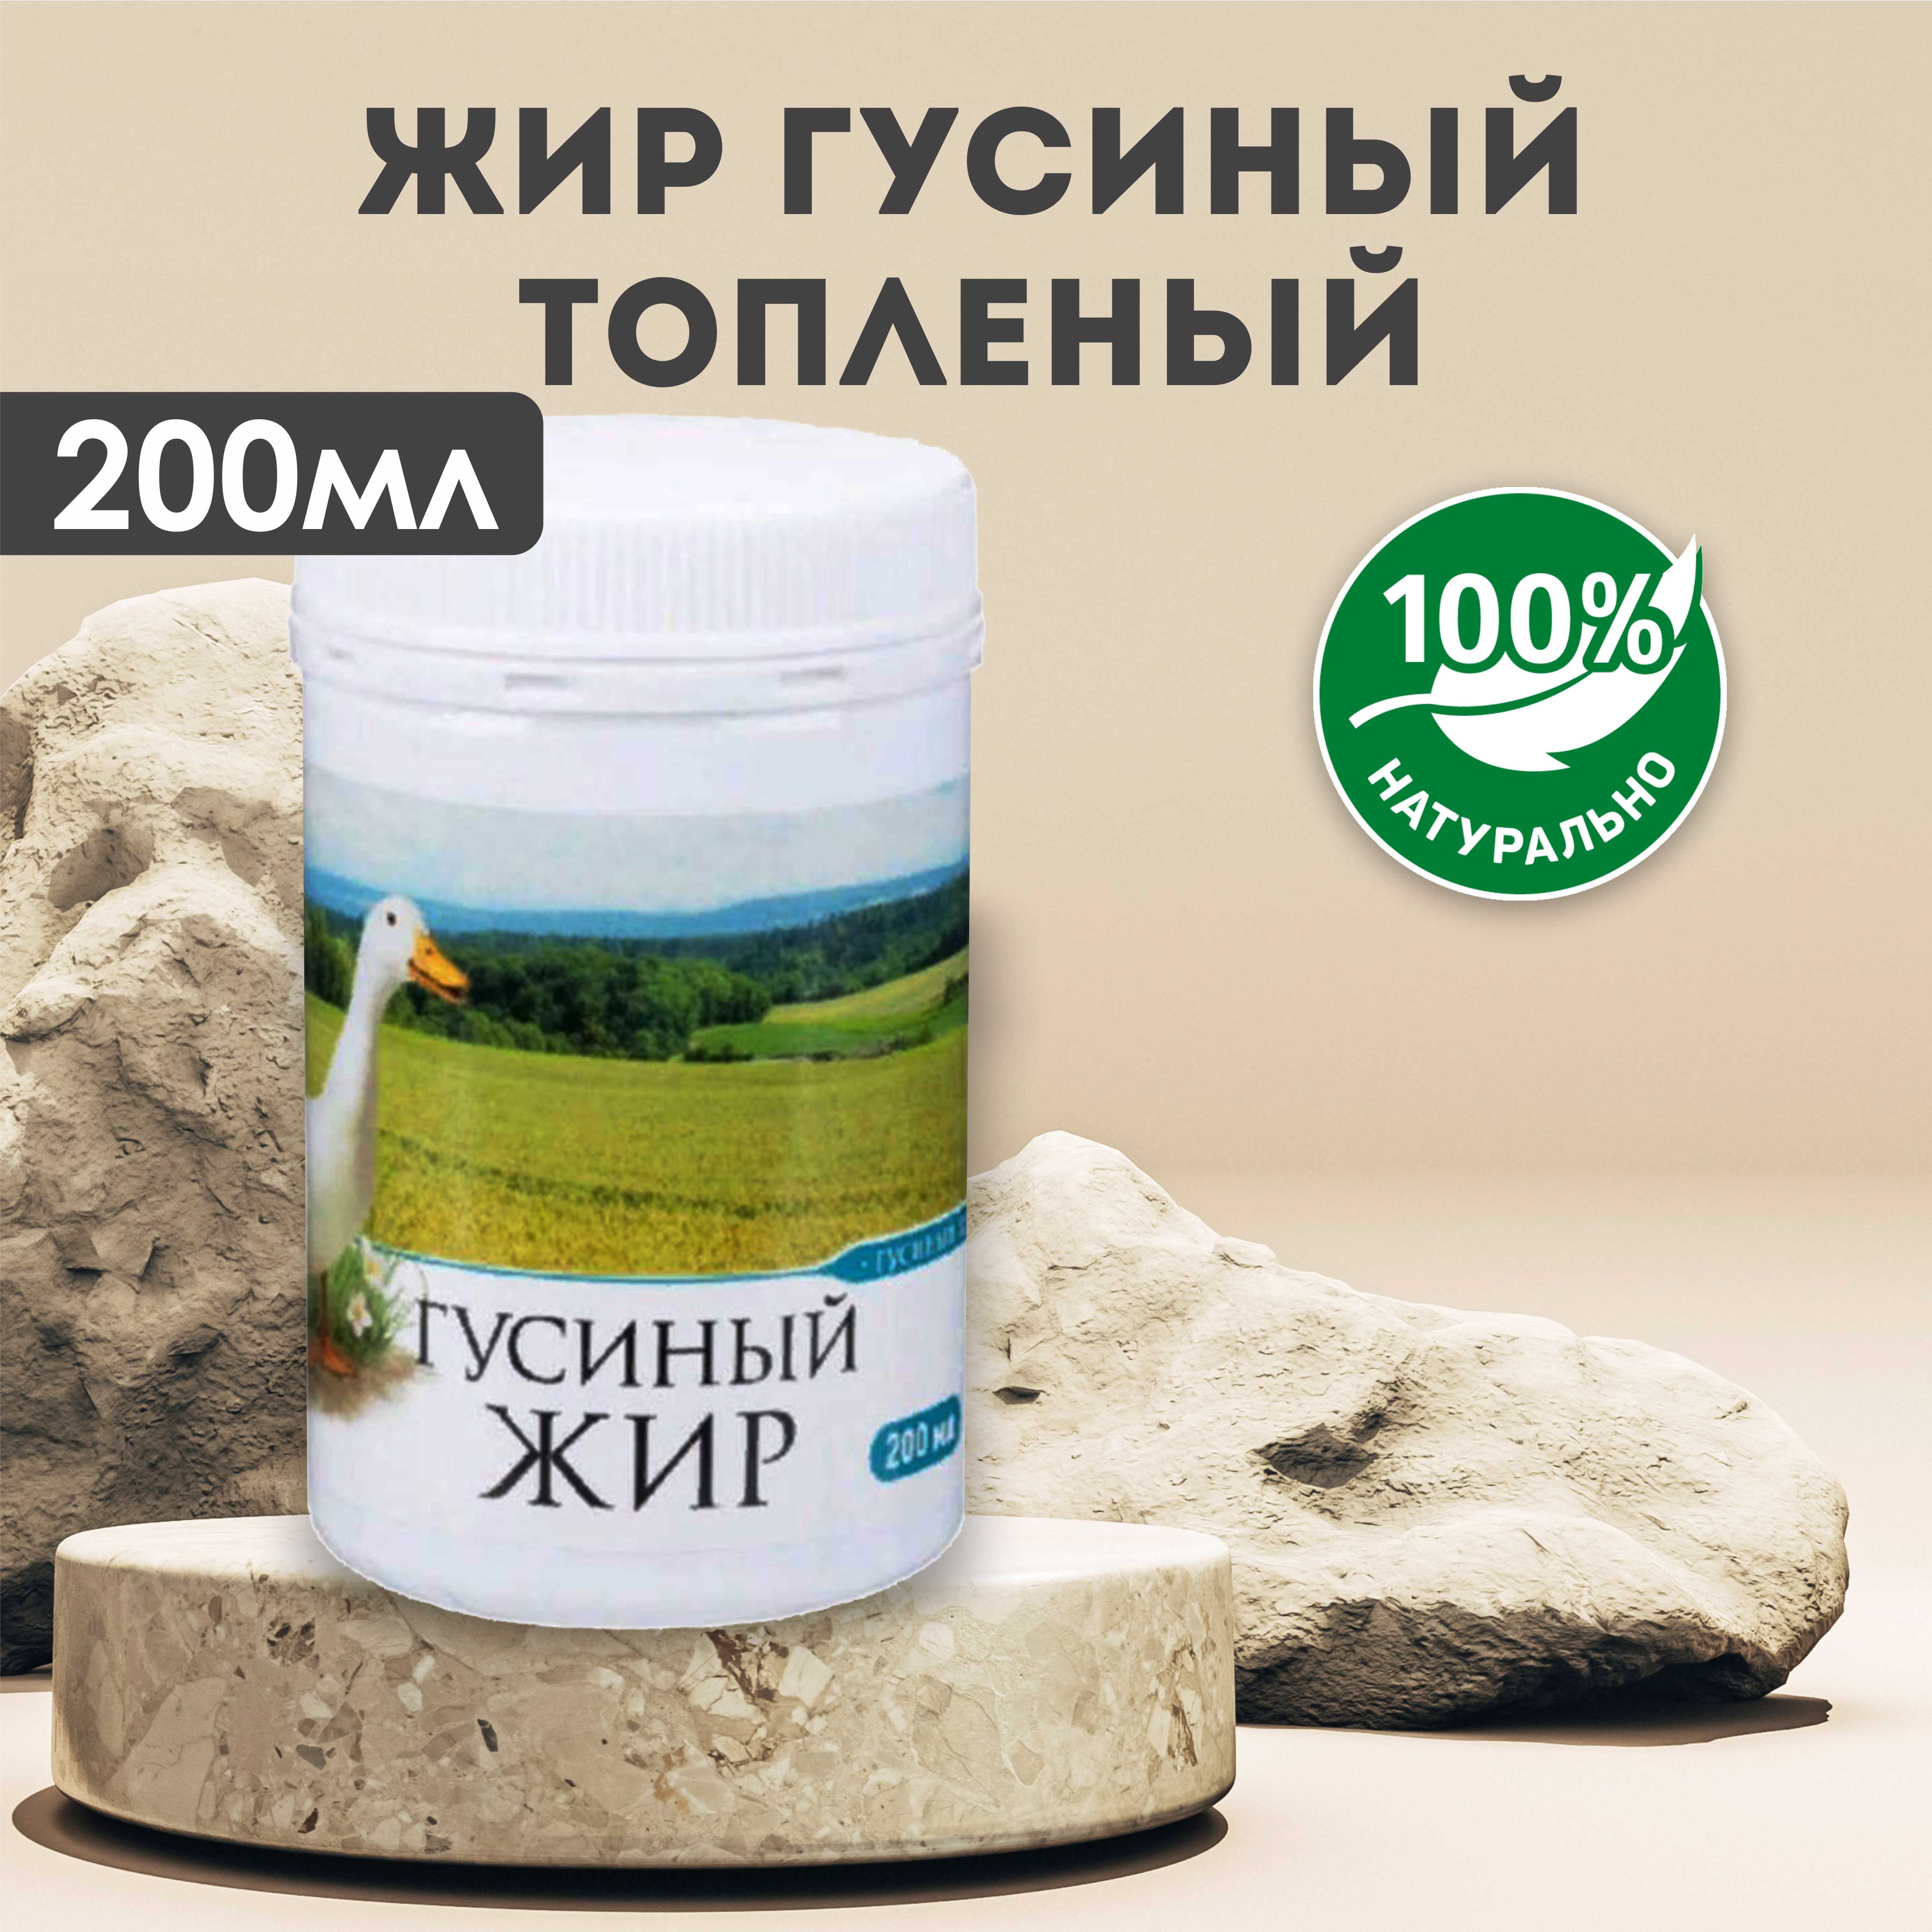 Мазь из гусиного жира 40гр купить 4,90 € c доставкой по всей Европе на сайте manikyrsha.ru